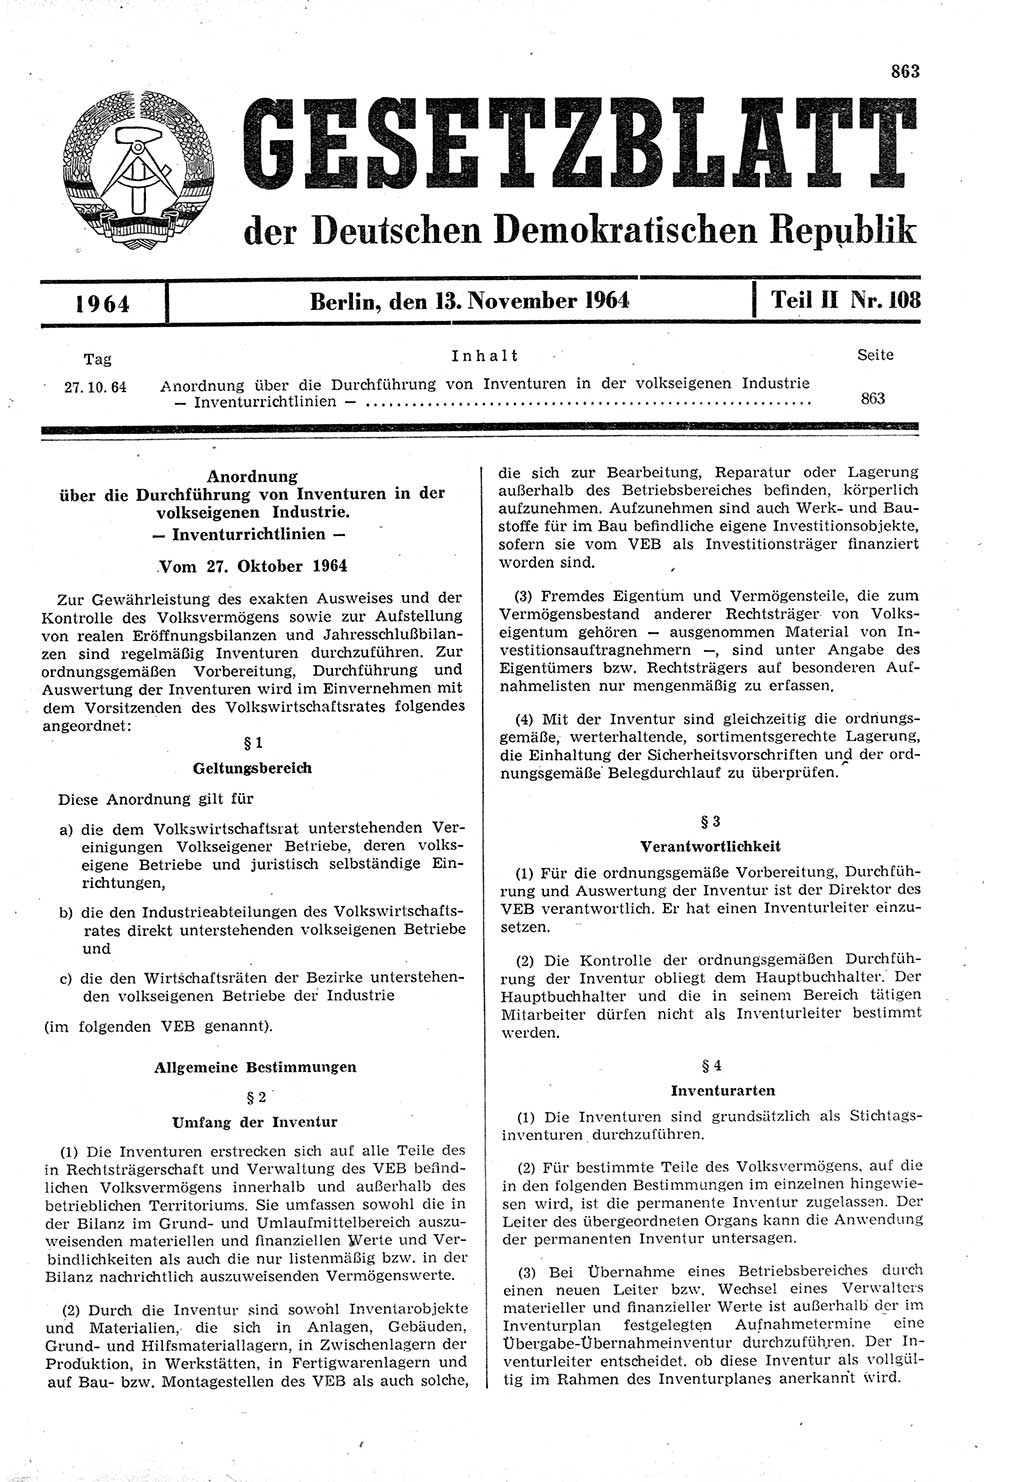 Gesetzblatt (GBl.) der Deutschen Demokratischen Republik (DDR) Teil ⅠⅠ 1964, Seite 863 (GBl. DDR ⅠⅠ 1964, S. 863)